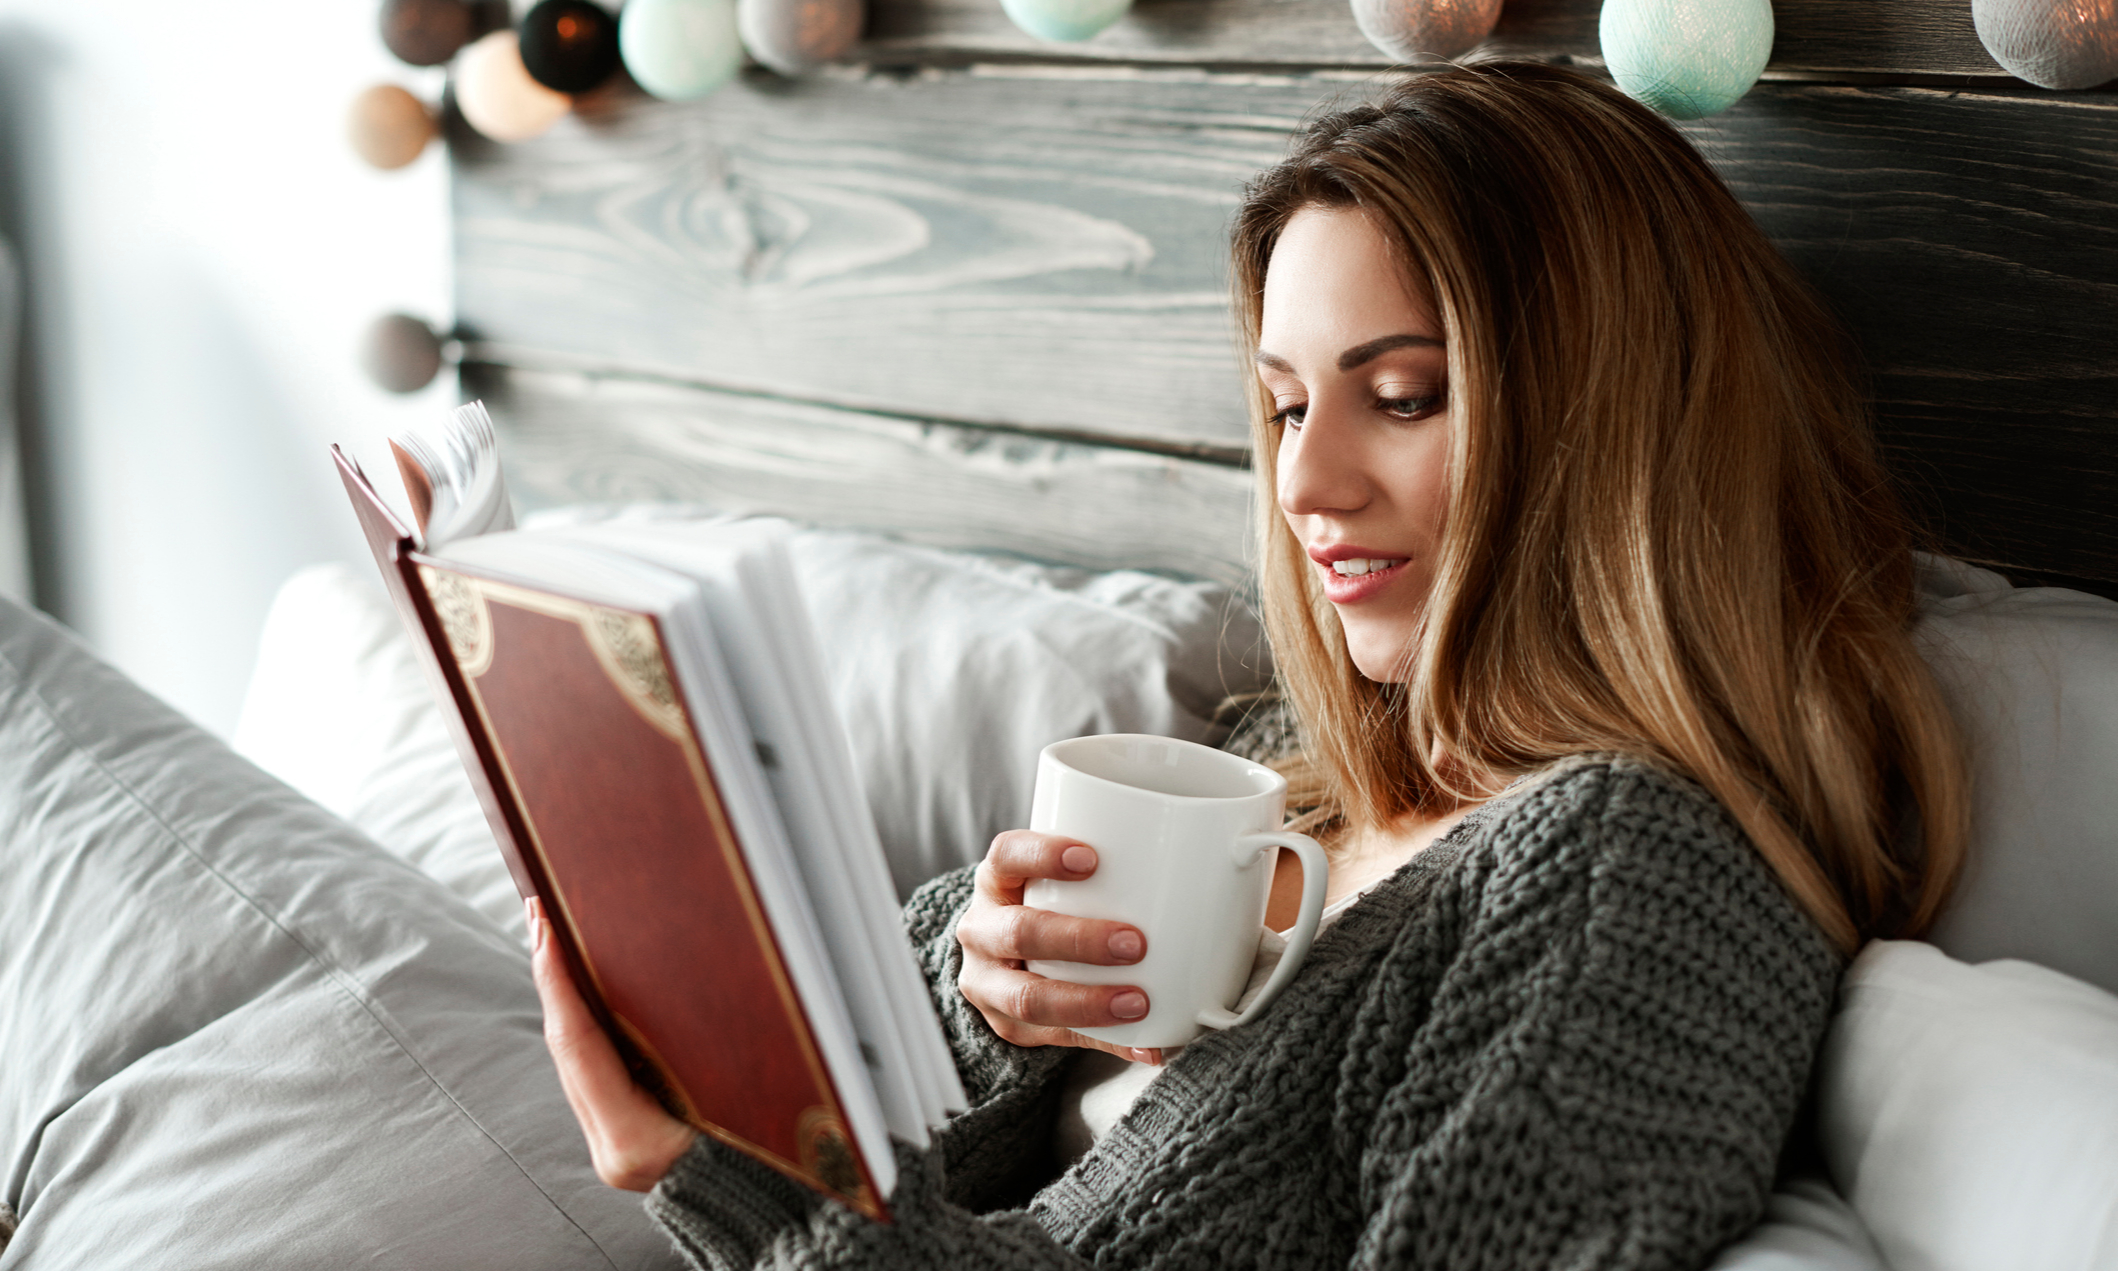 Читаем смотрим едим. Девушка с книгой. Женщина пьет кофе. Чтение и кофе. Девушка пьет кофе.